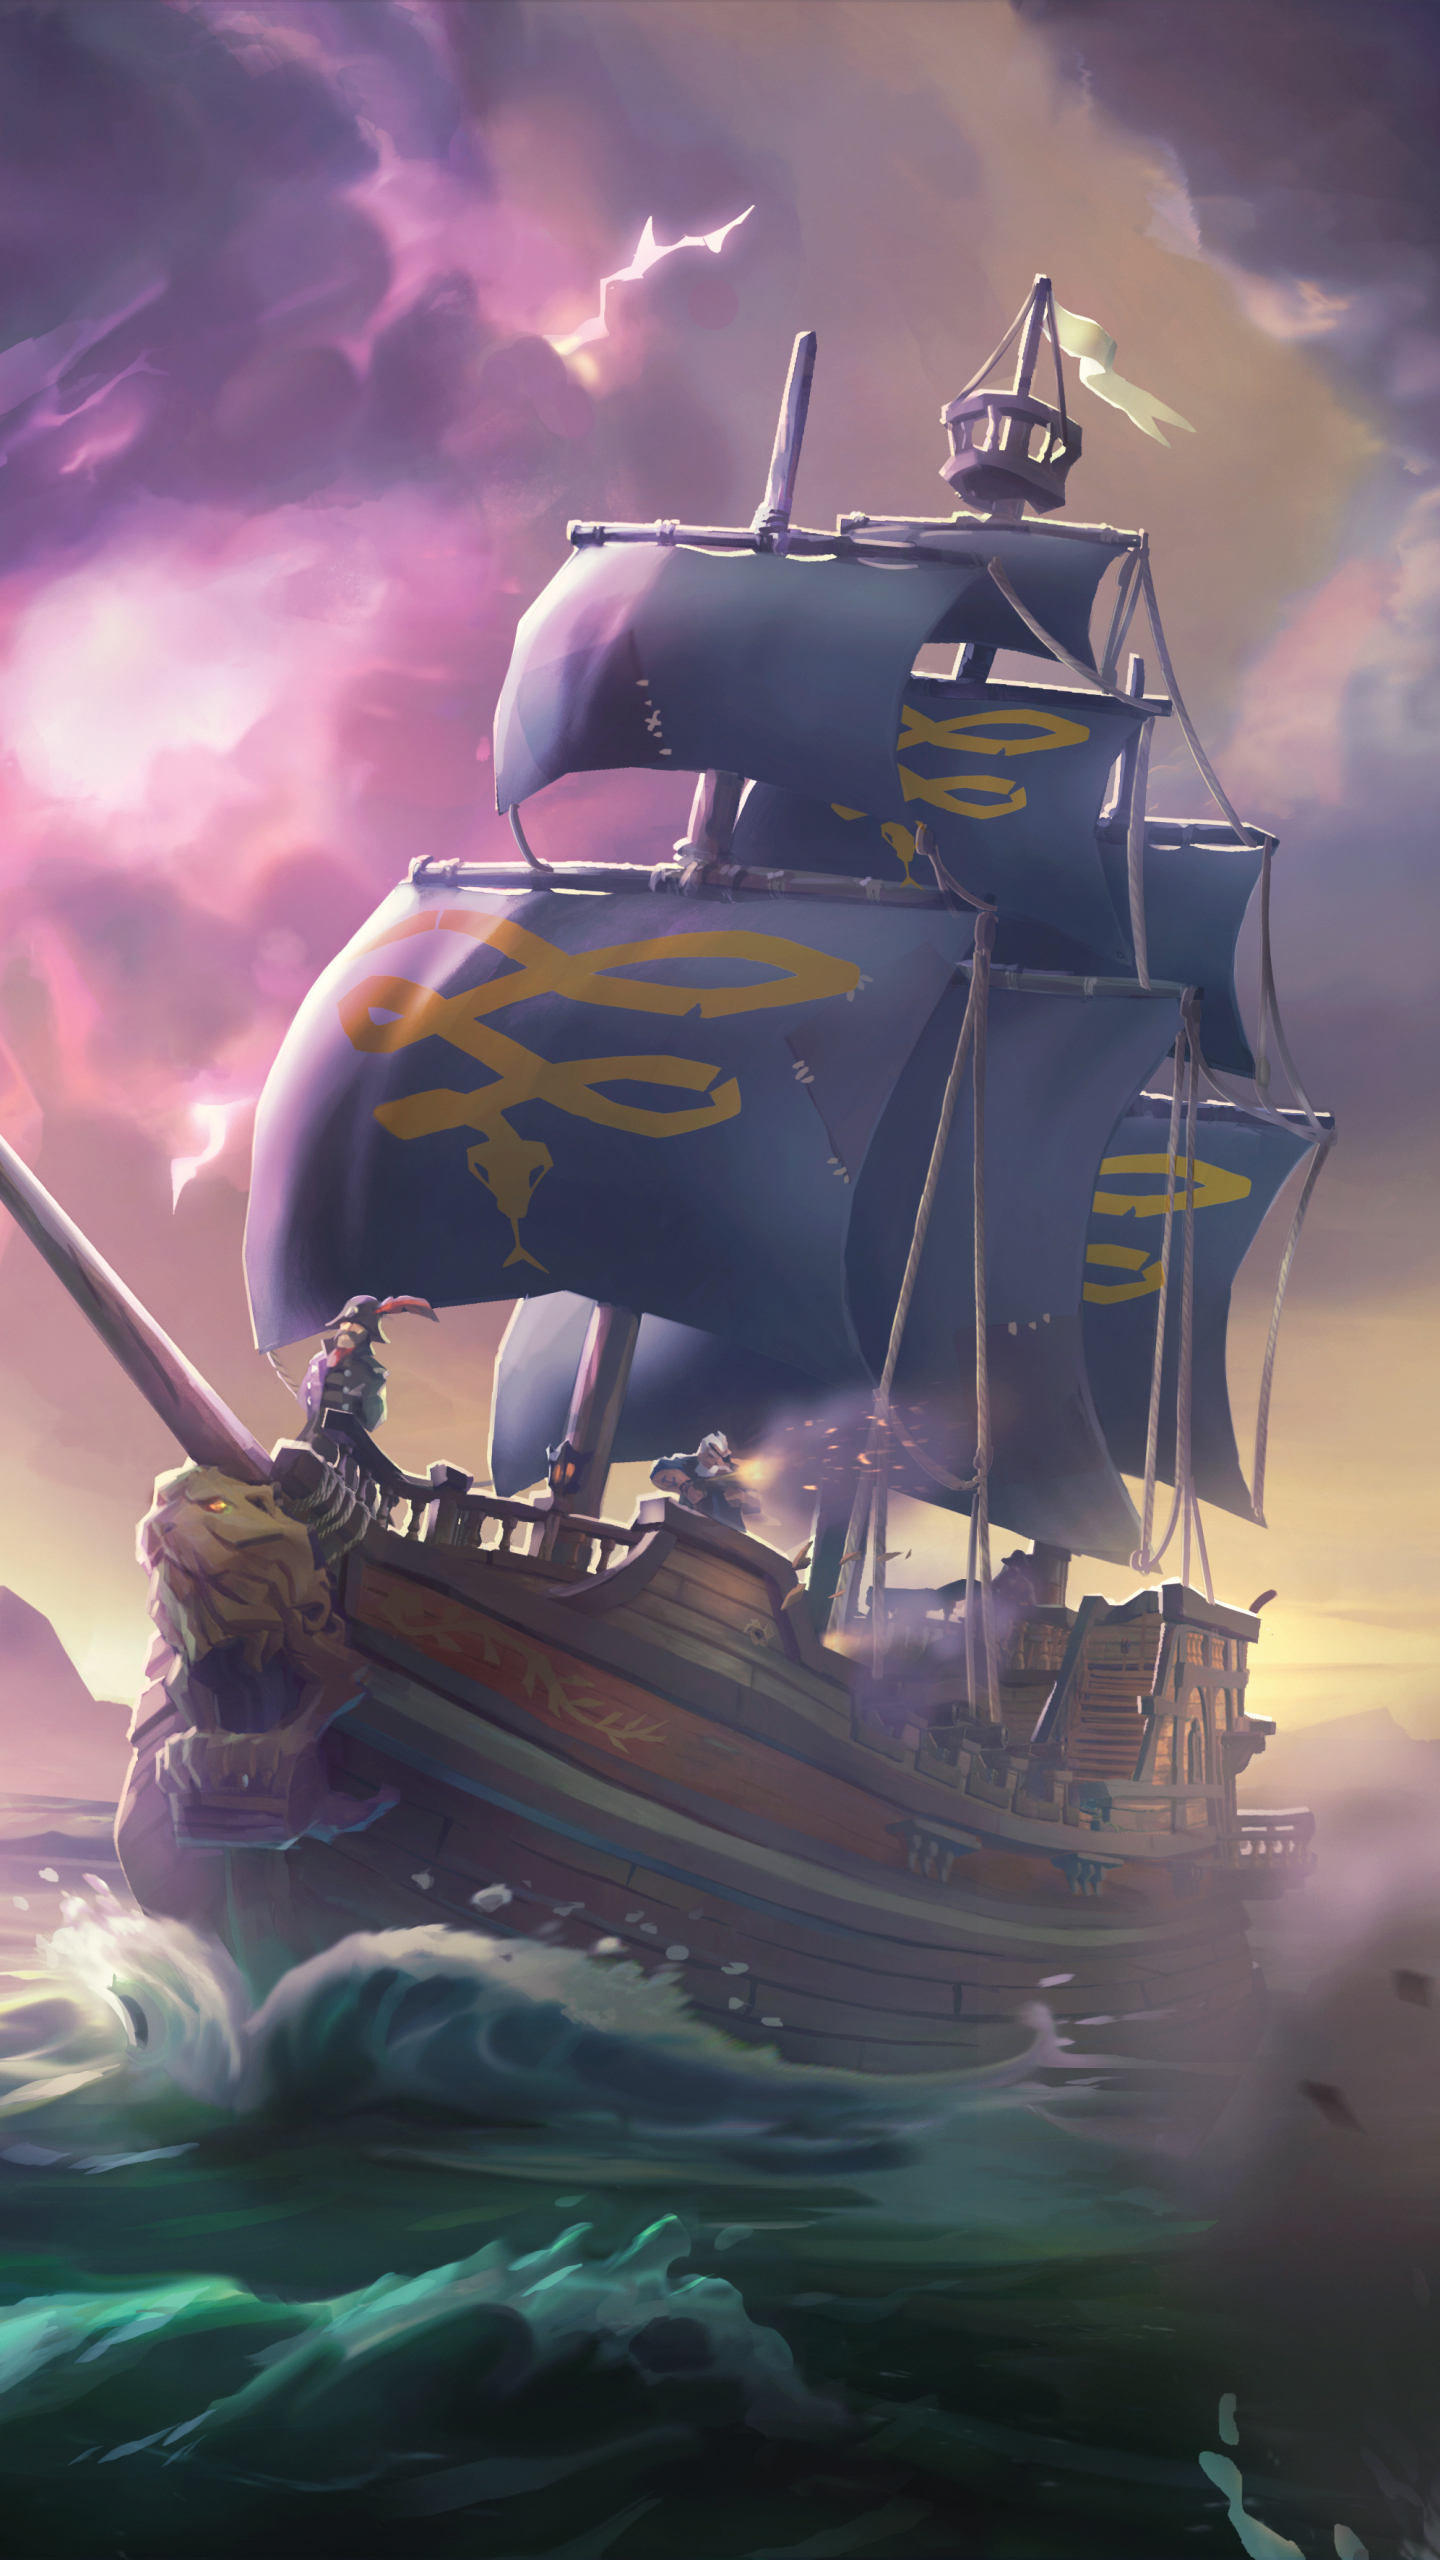 Descarga gratuita de fondo de pantalla para móvil de Pirata, Videojuego, Barco Pirata, Sea Of Thieves.